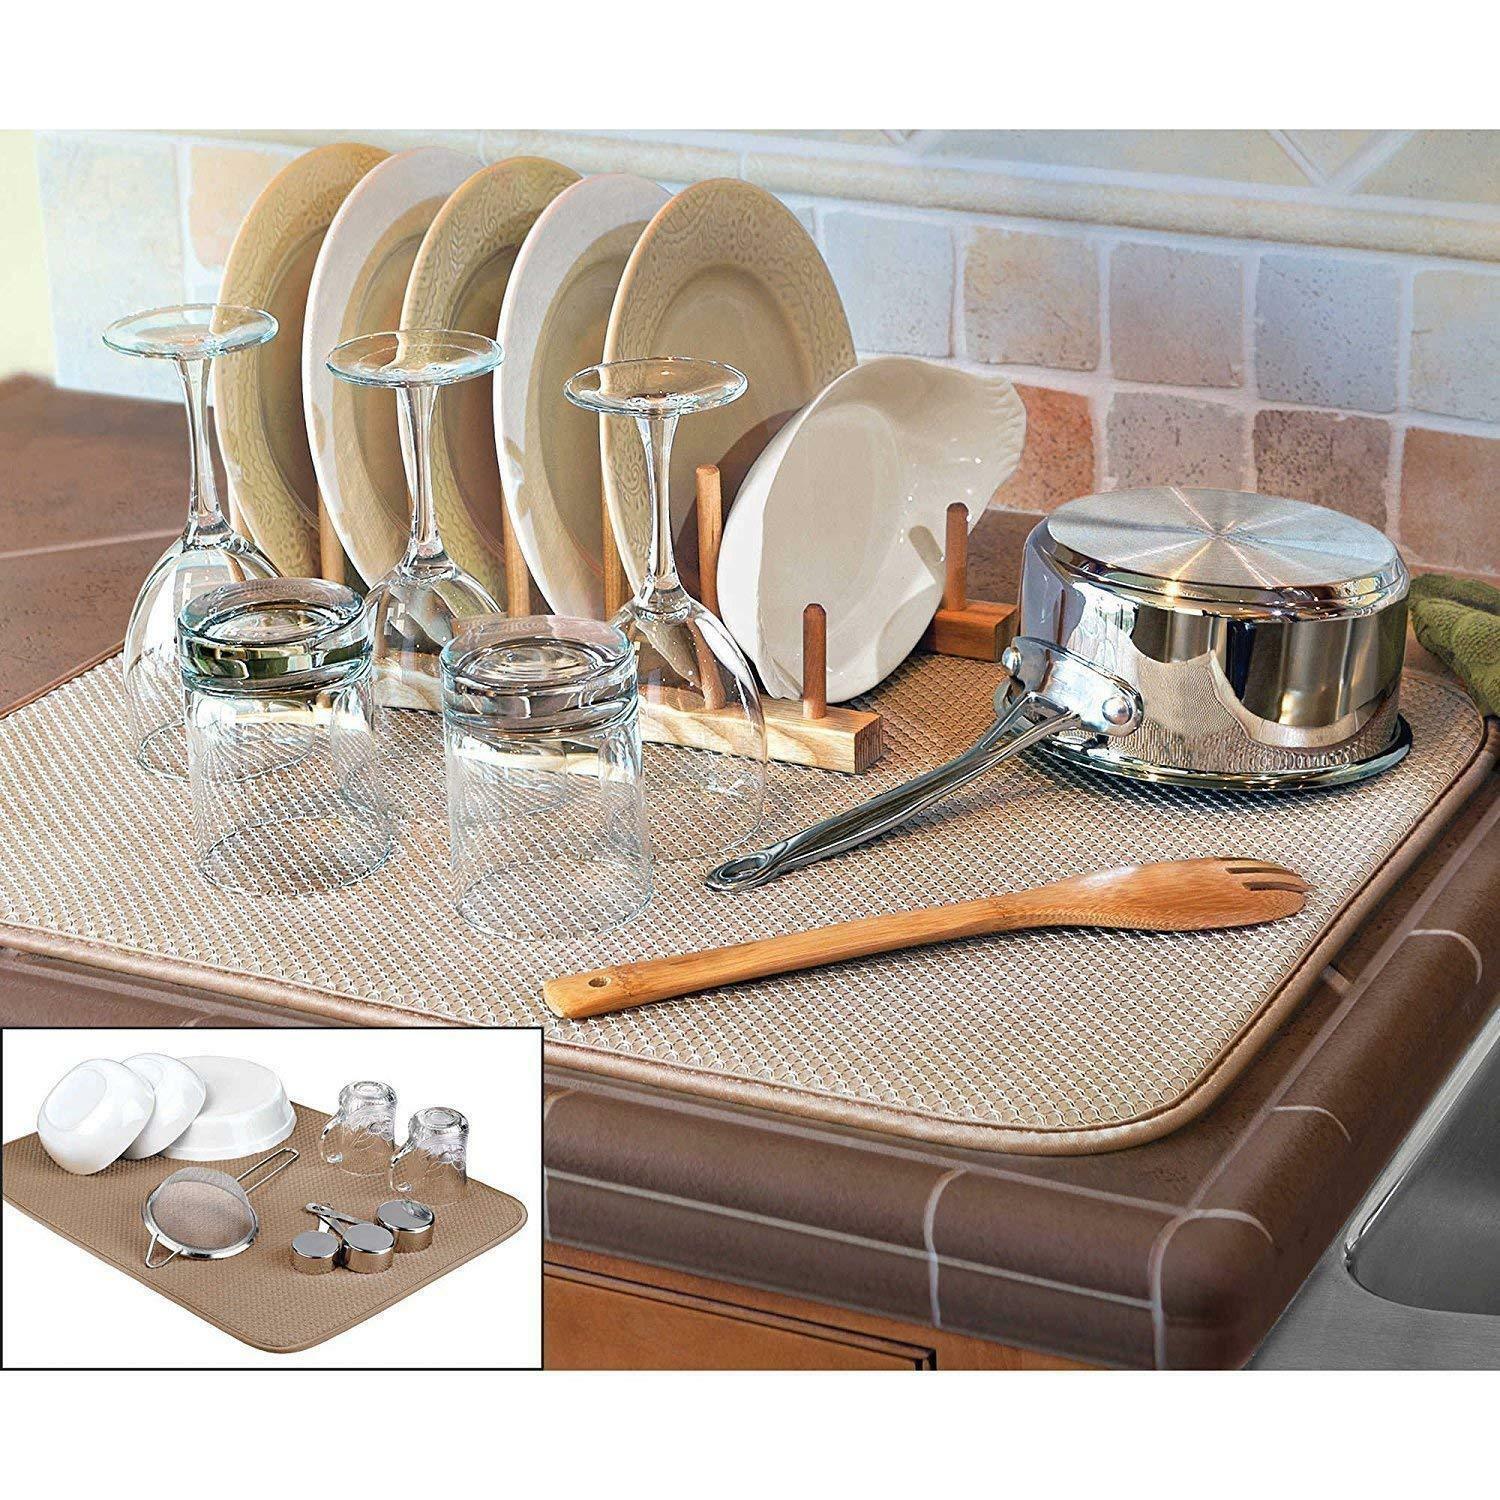 Finntm Dual Sided Xl Dish Drying Mat Kitchen Tan 18" X 24" Microfiber Absorbent